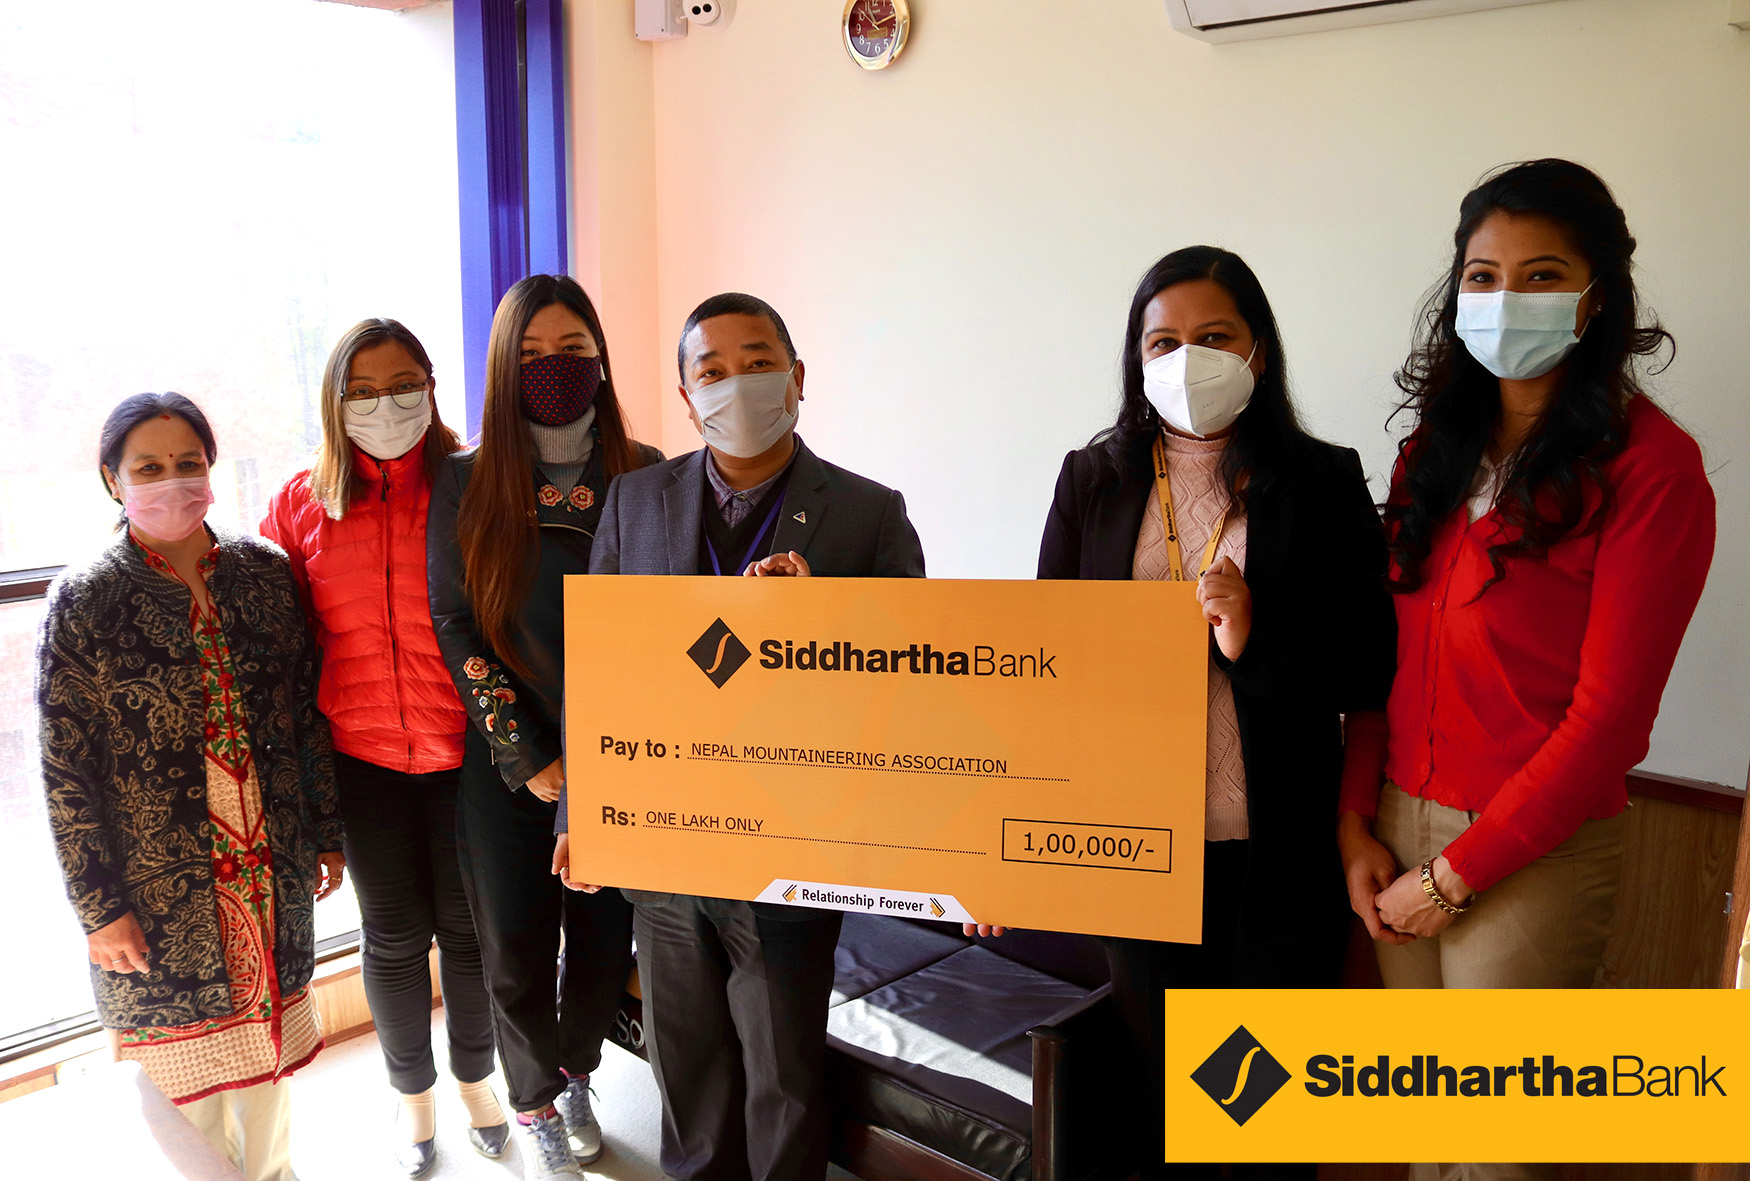 सिद्धार्थ बैङ्कद्वारा शैक्षिक छात्रवृत्तिका लागि नेपाल पर्वतारोहण संघलाई आर्थिक सहयोग